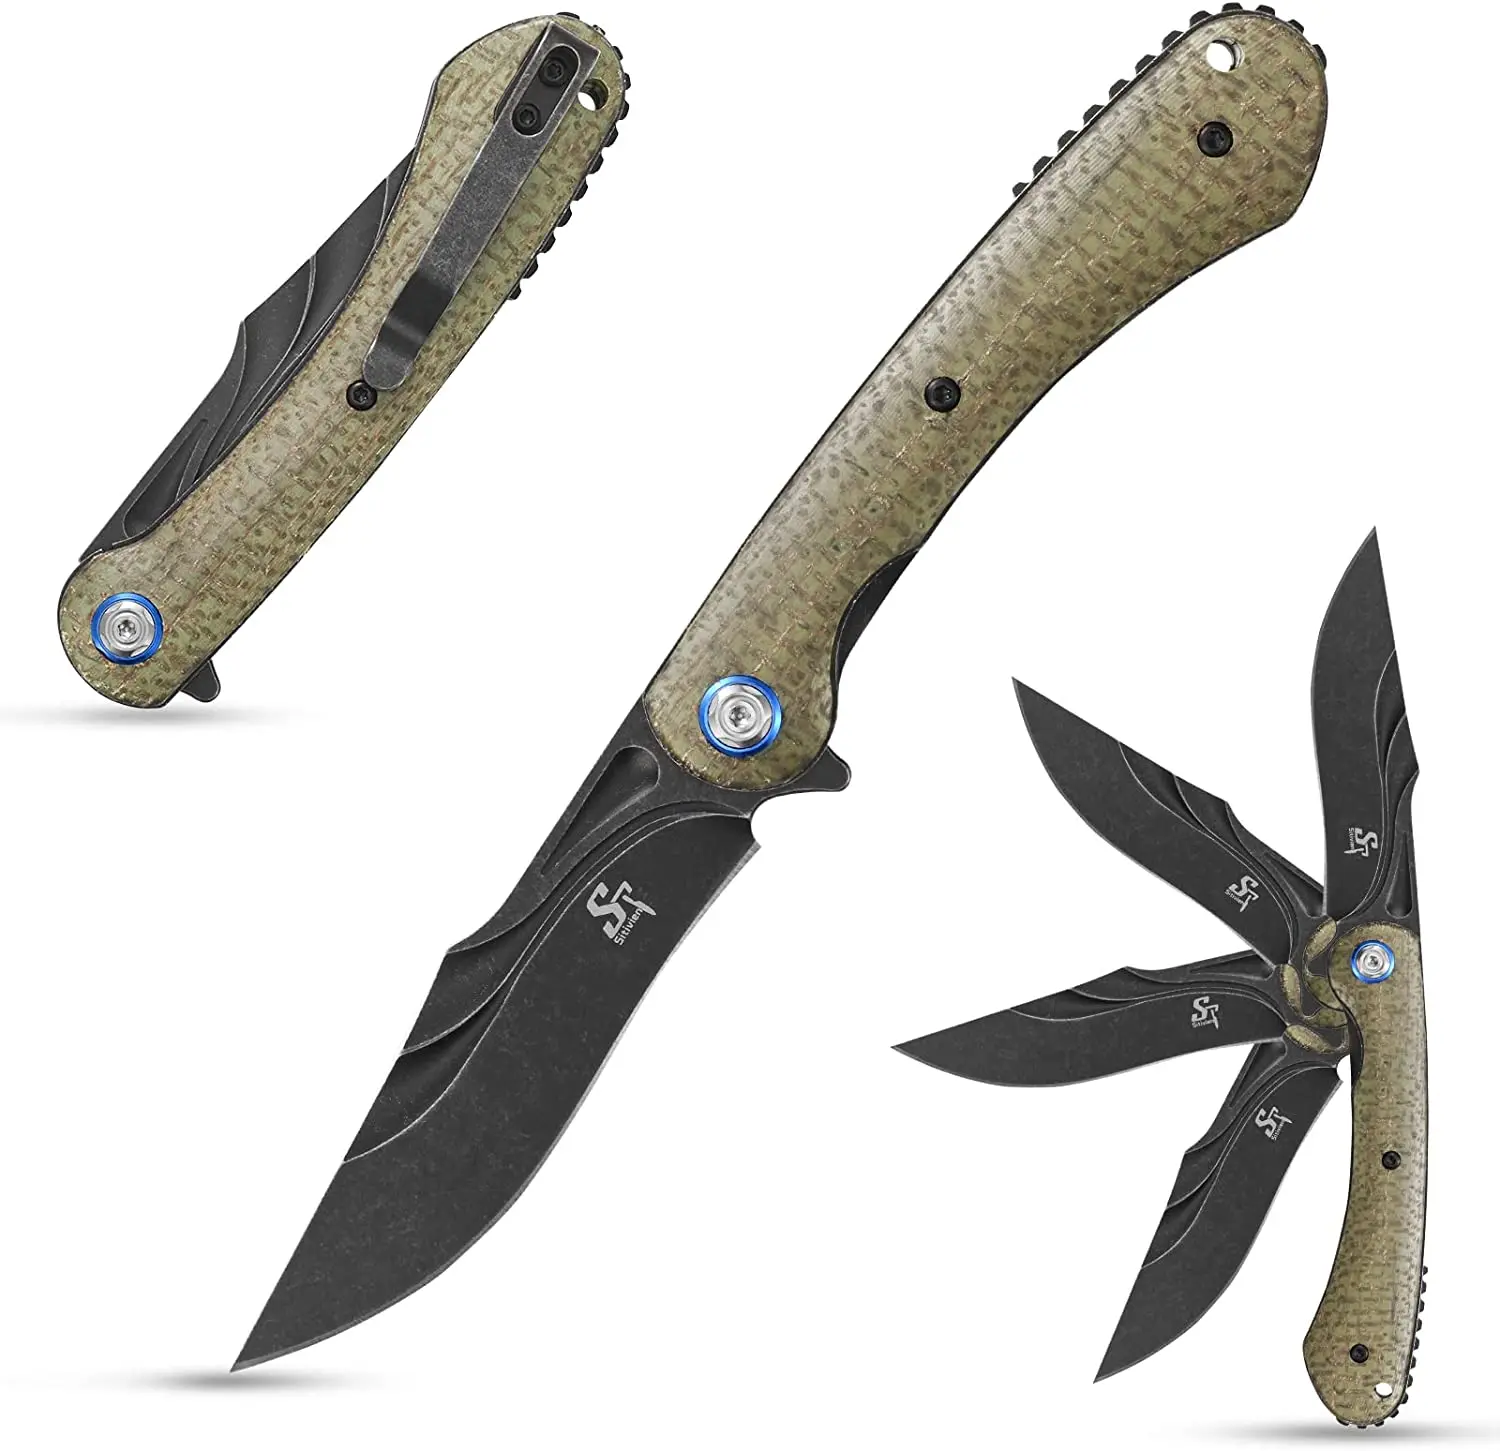 Sitivien ST146 Folding Knife 14C28N Steel Blade G10 Micarta Handle Pocket EDC Knife for Home Tool